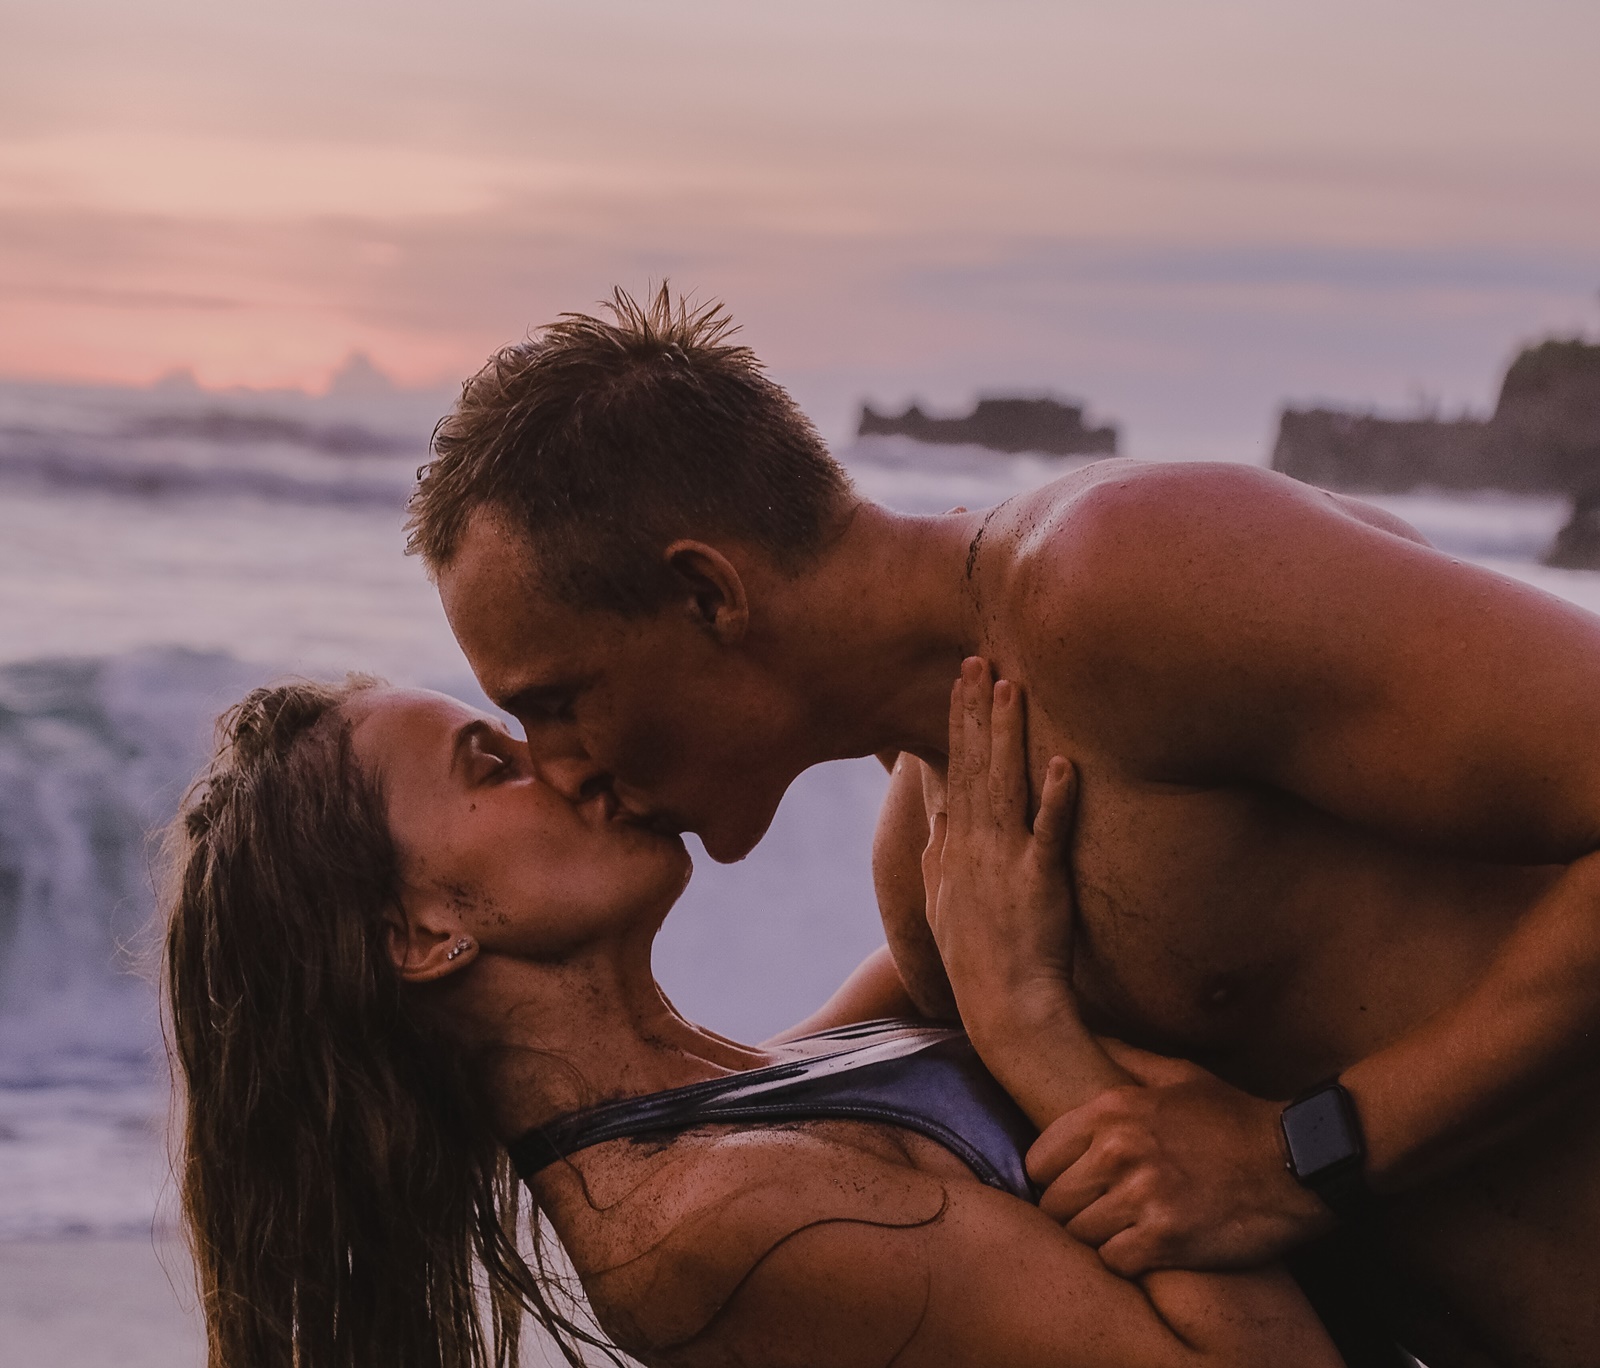 Σεξ στην παραλία κίνδυνοι: Τι να προσέχεις